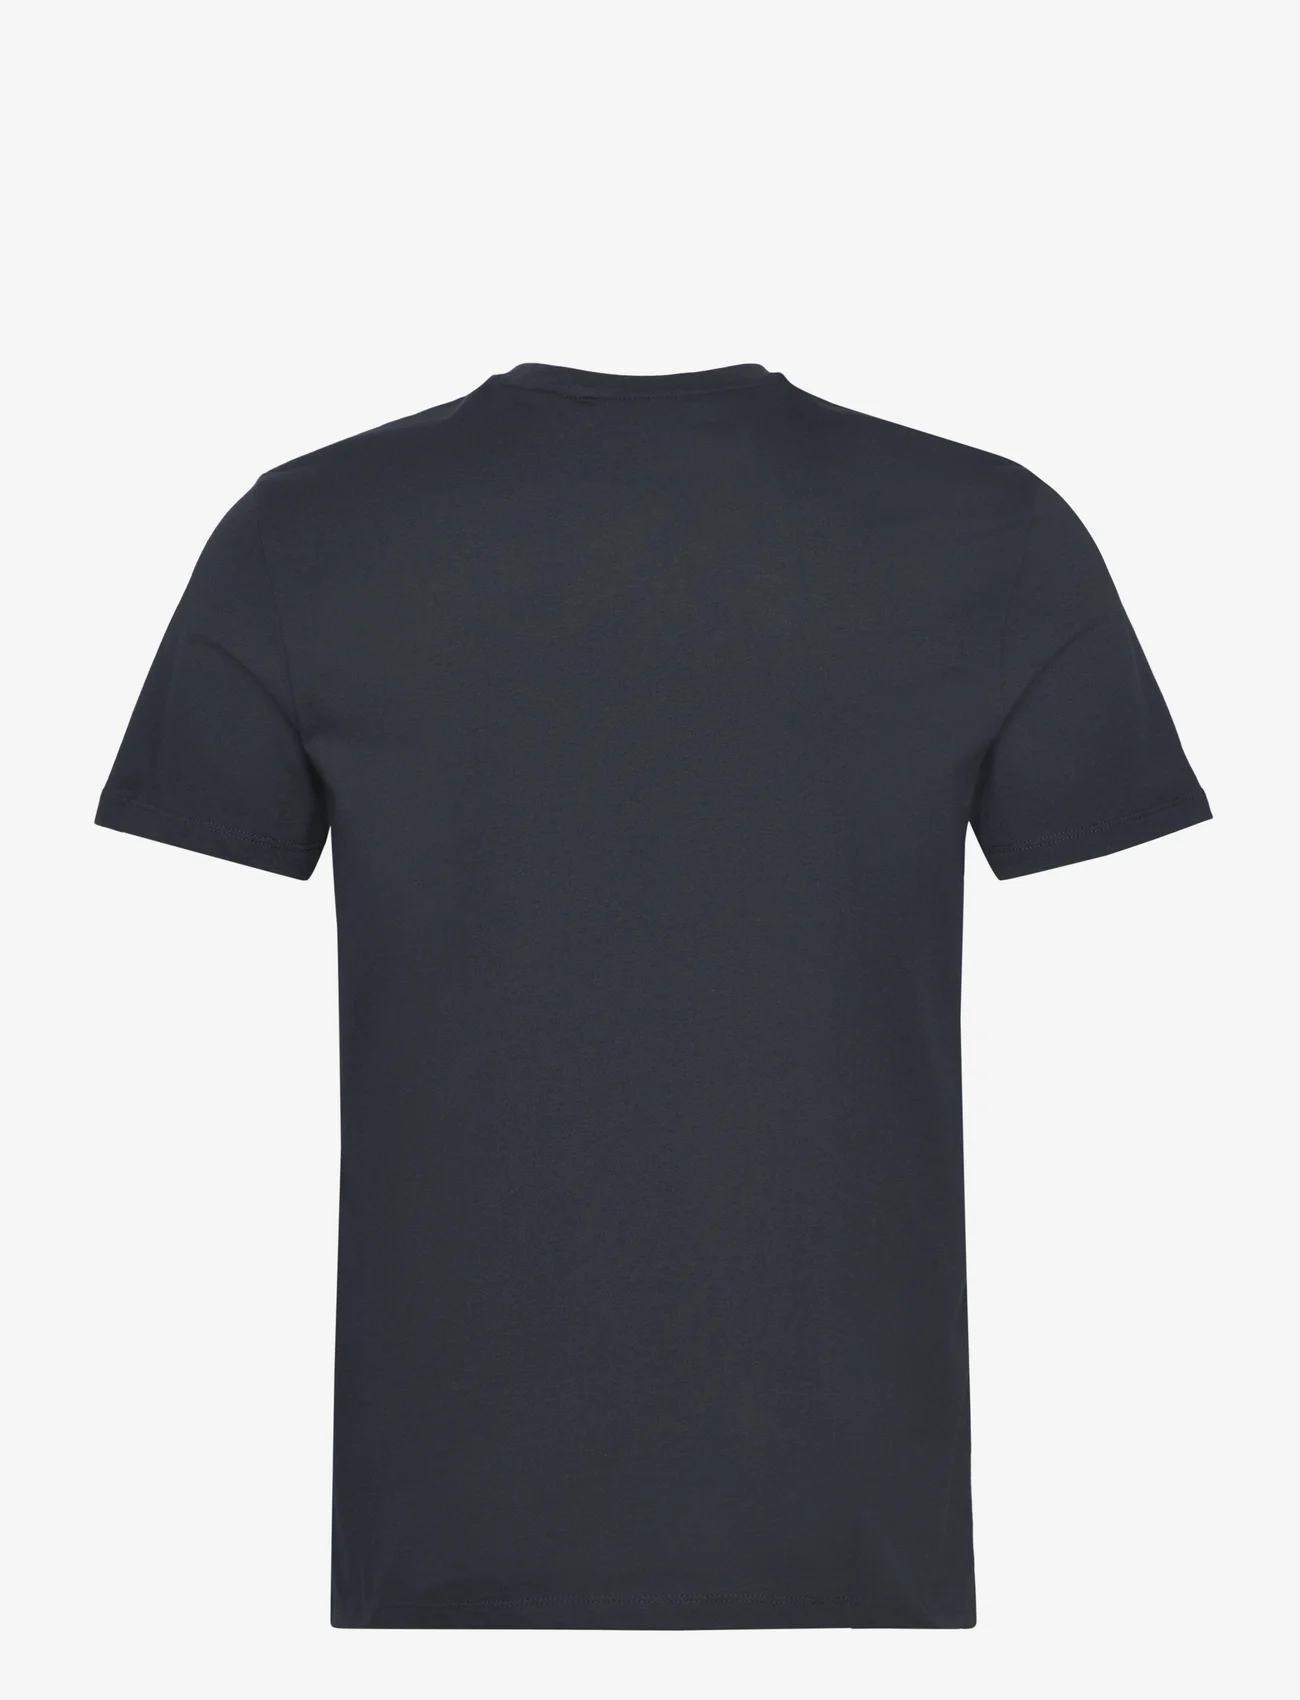 Lyle & Scott - Floral Print Pocket T-Shirt - die niedrigsten preise - z271 dark navy - 1